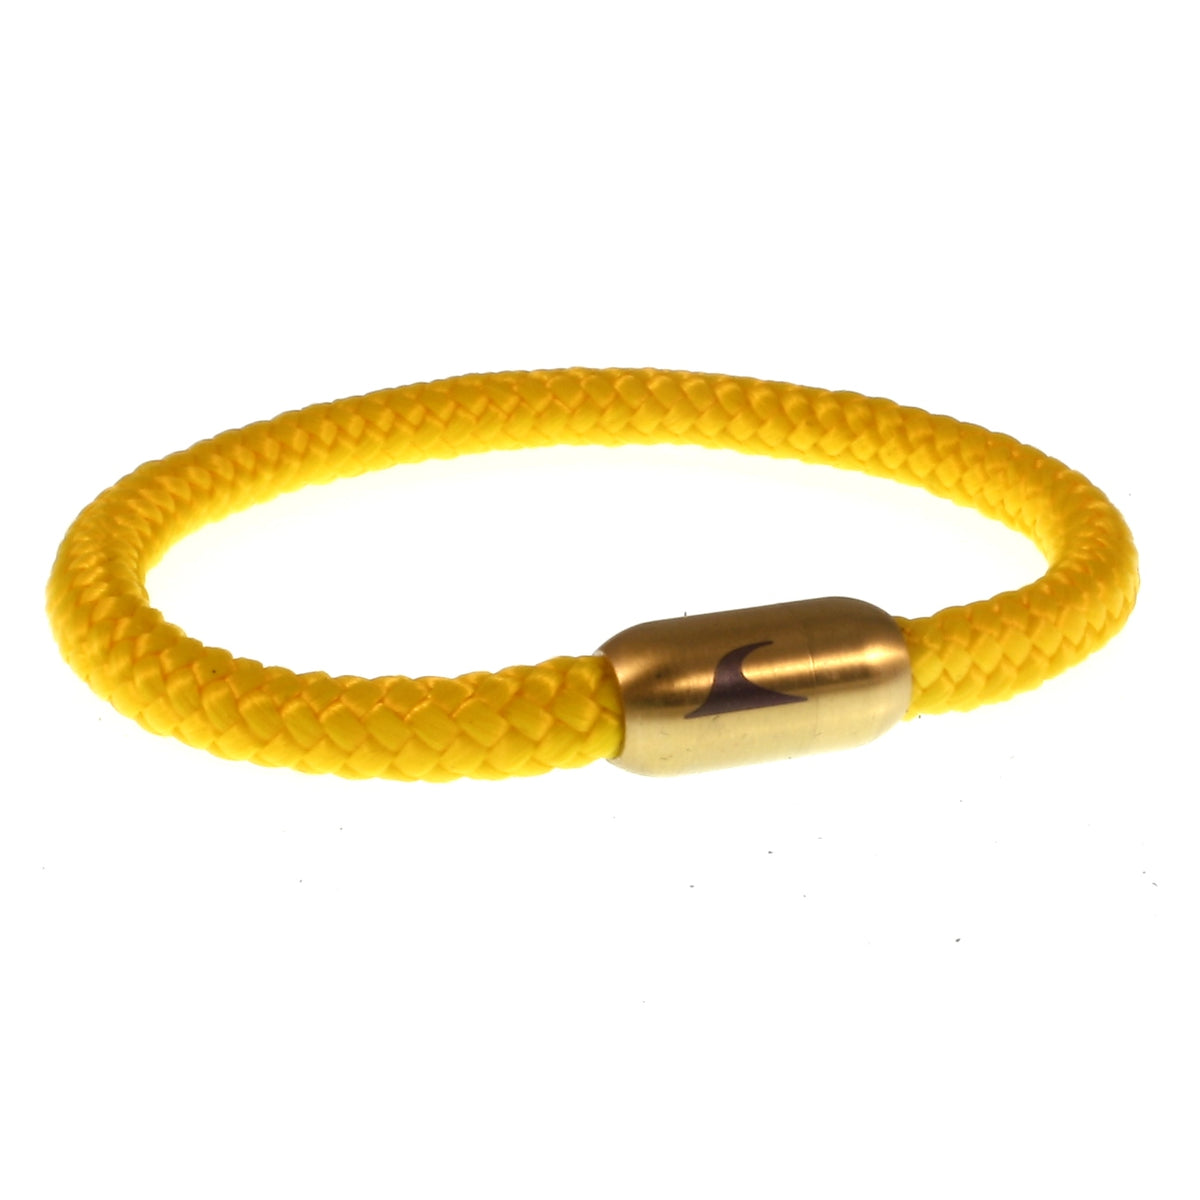 Herren-segeltau-armband-damen-sylt-gelb-gold-geflochten-Edelstahlverschluss-vorn-wavepirate-shop-st